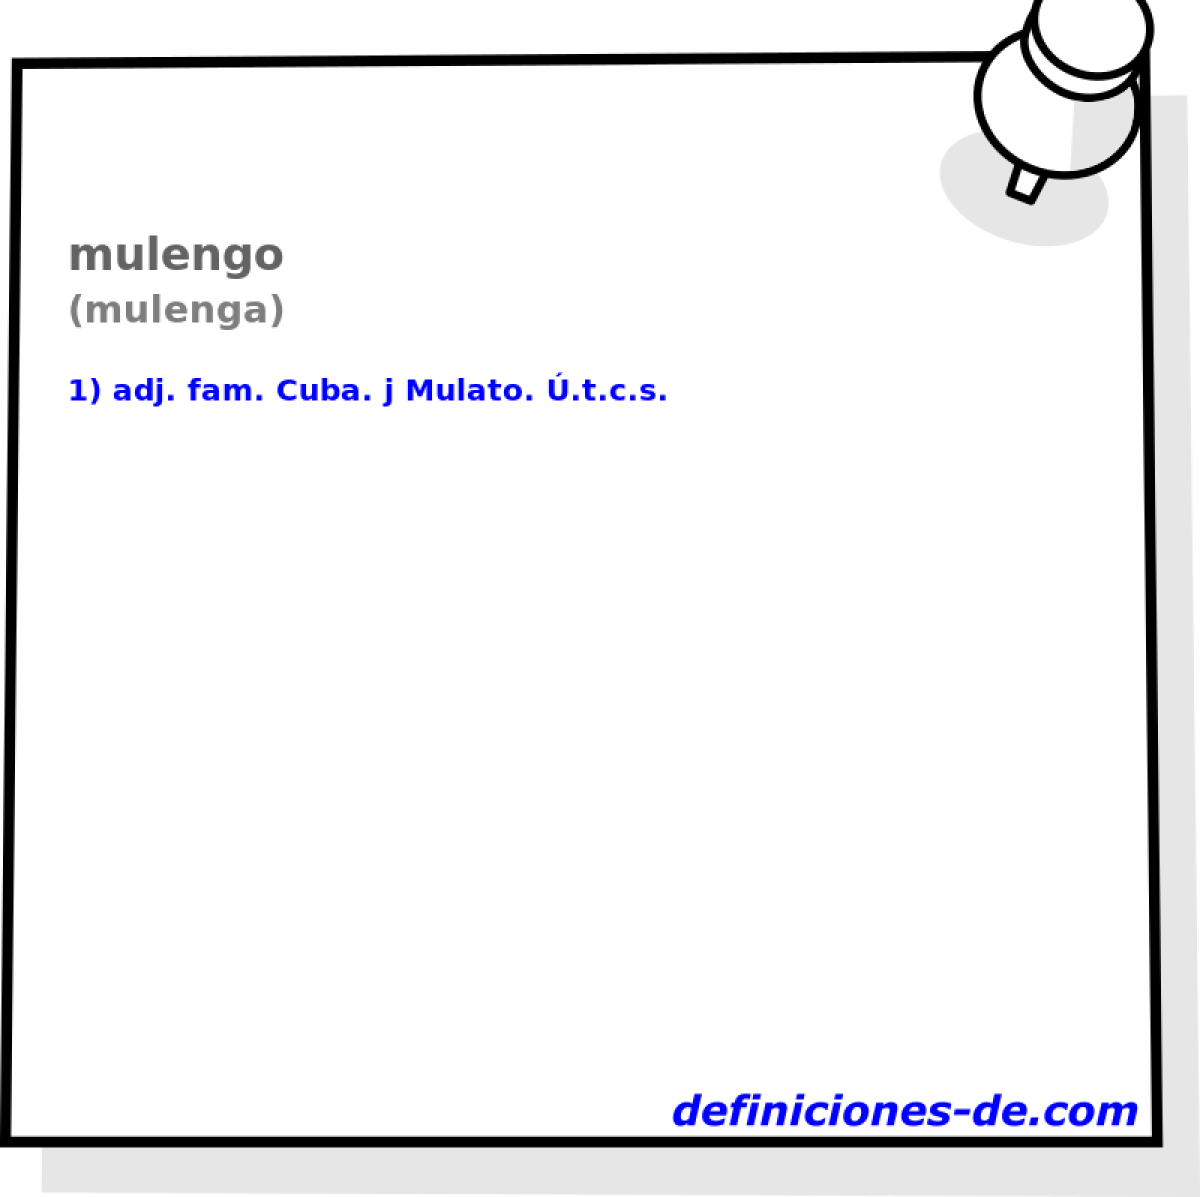 mulengo (mulenga)